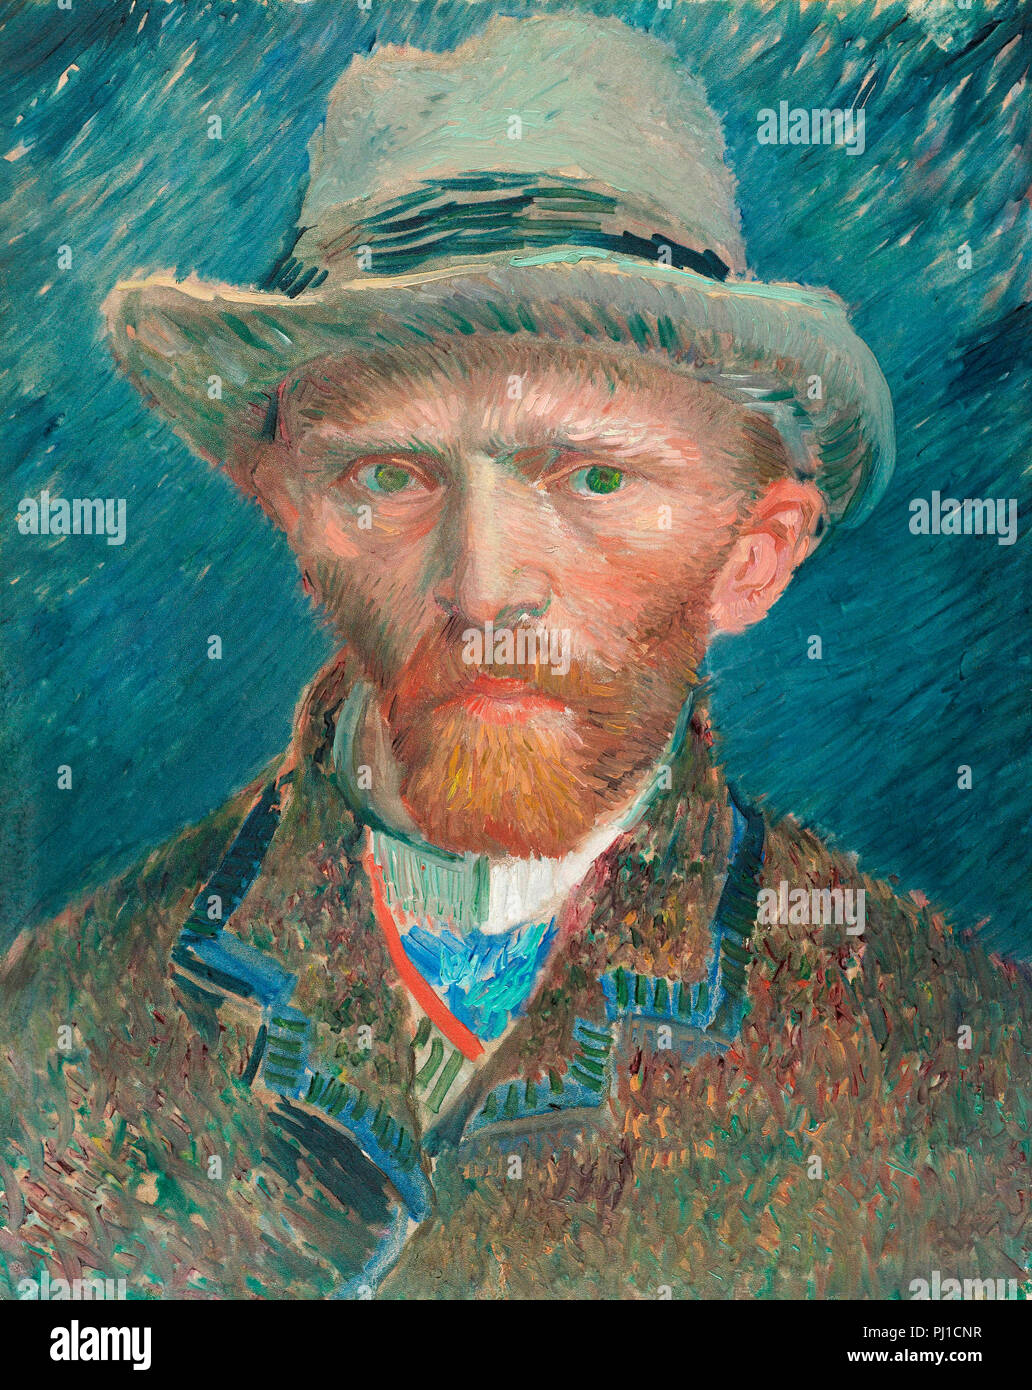 Vincent van Gogh autoportrait datant de 1887. Vincent van Gogh, 1853-1890, peintre postimpressionniste néerlandais. Rijksmuseum, Amsterdam, Pays-Bas. Banque D'Images